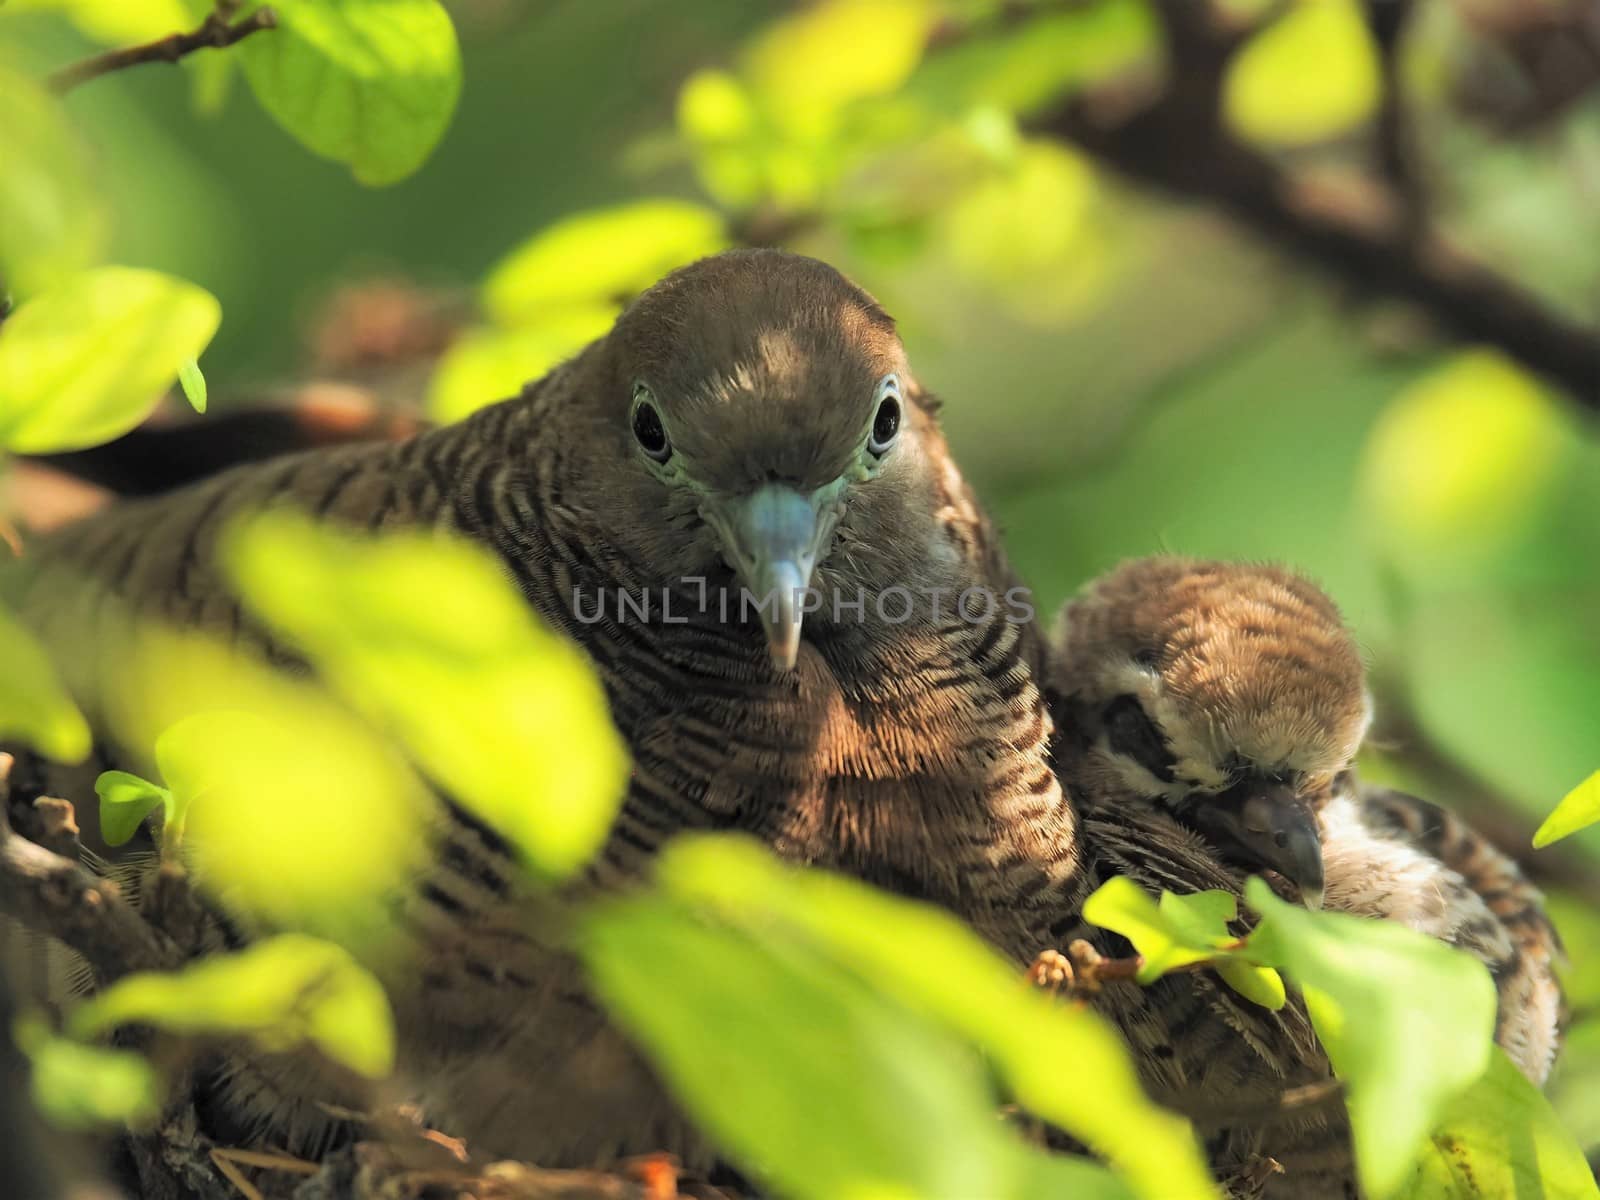 Two Birds In Bird's Nest, Baby Bird With Mother Portrait by WernBkk